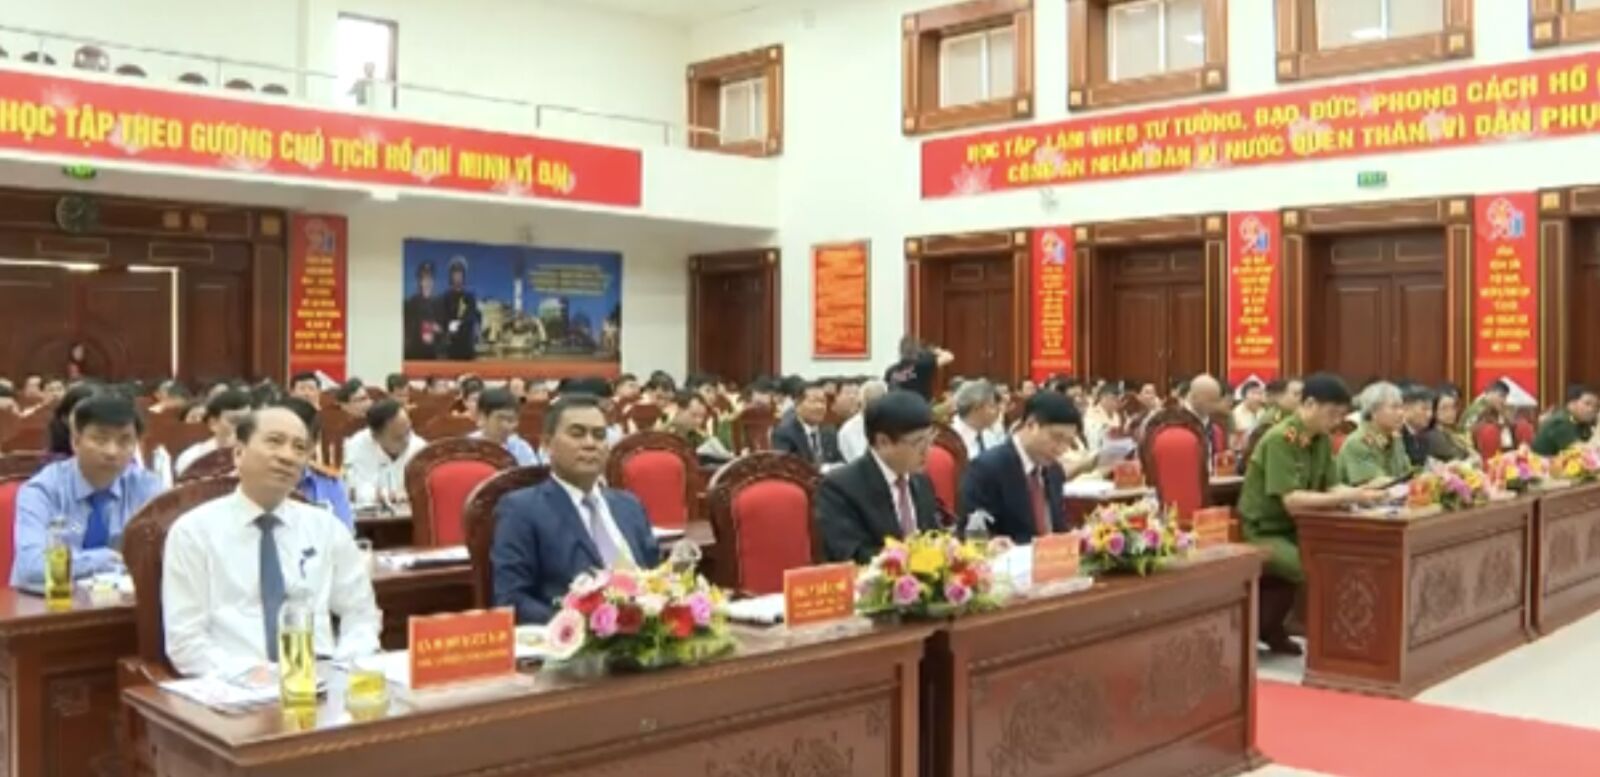 Đại hội đảng bộ công an tỉnh Đắk Lắk nhiệm kỳ 2020 - 2025 lần thứ XIII.